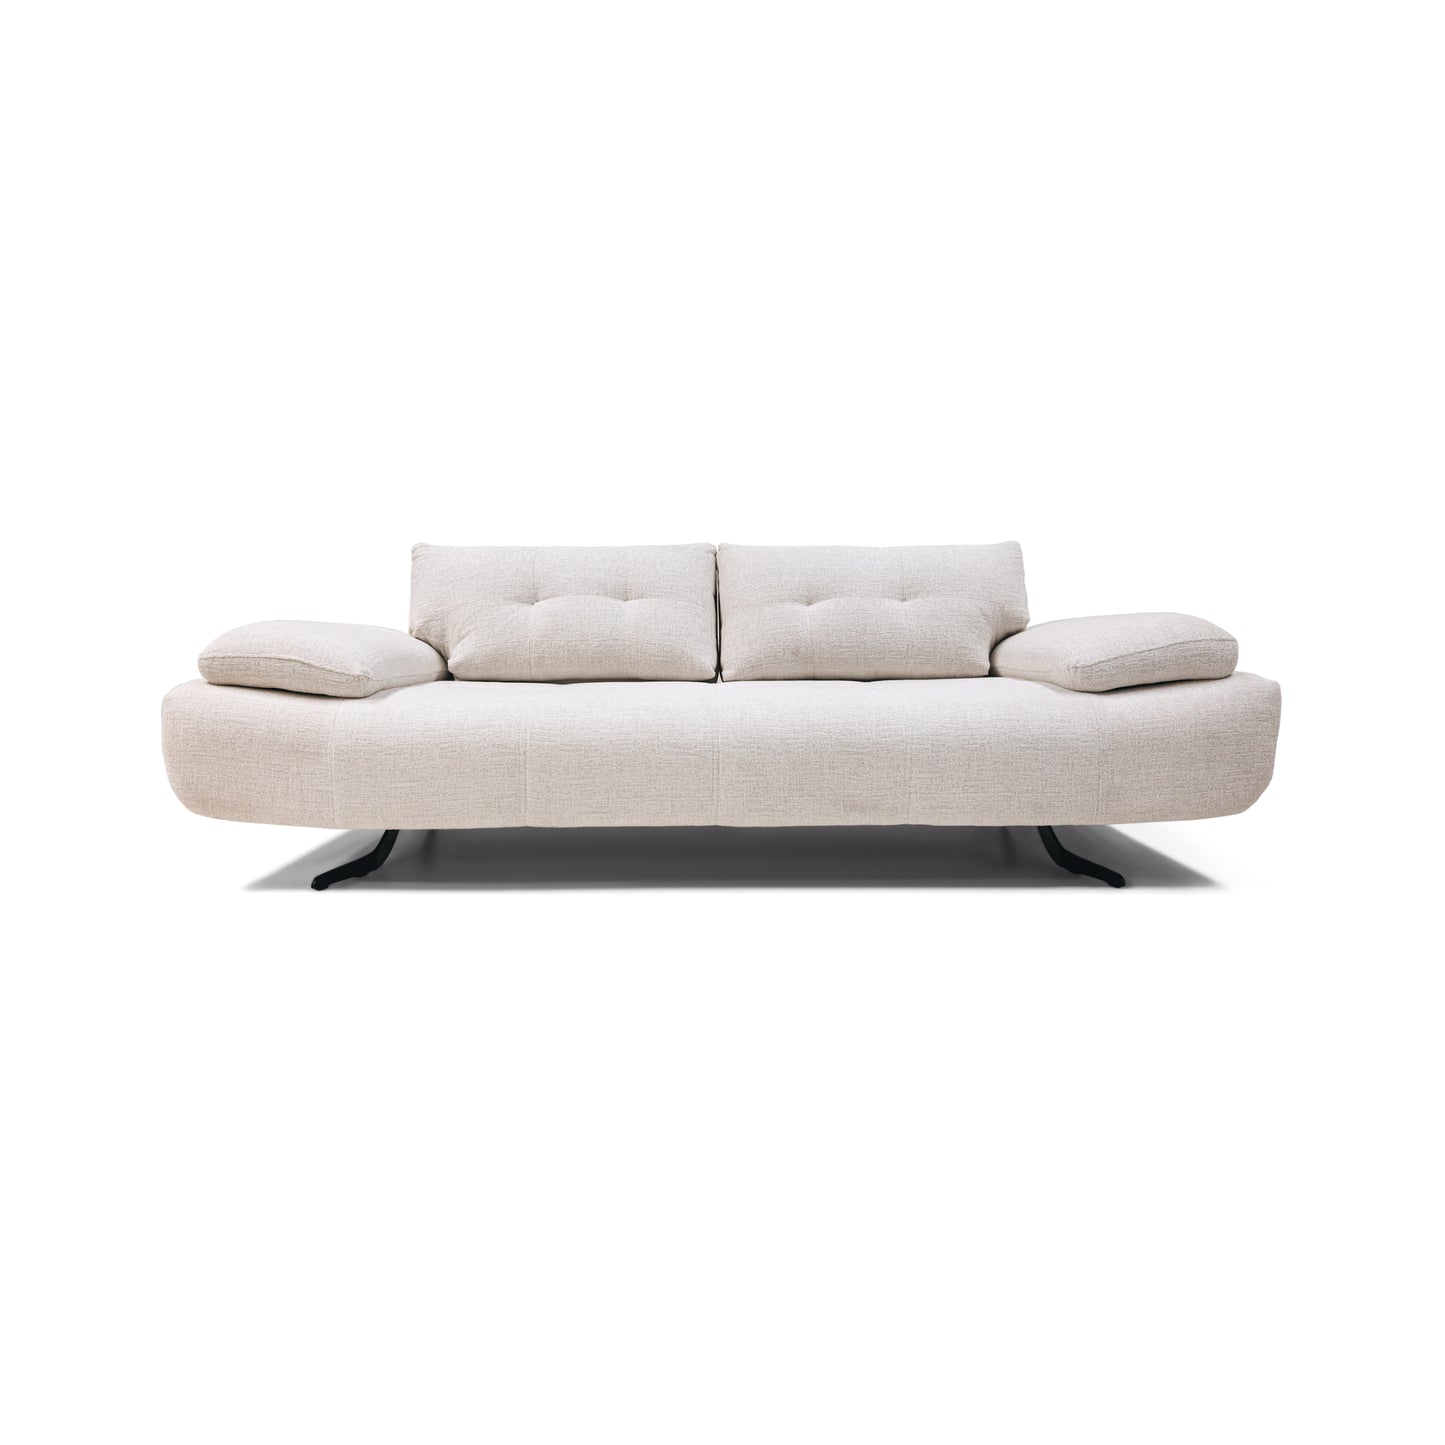 The Caspian Large Sofa